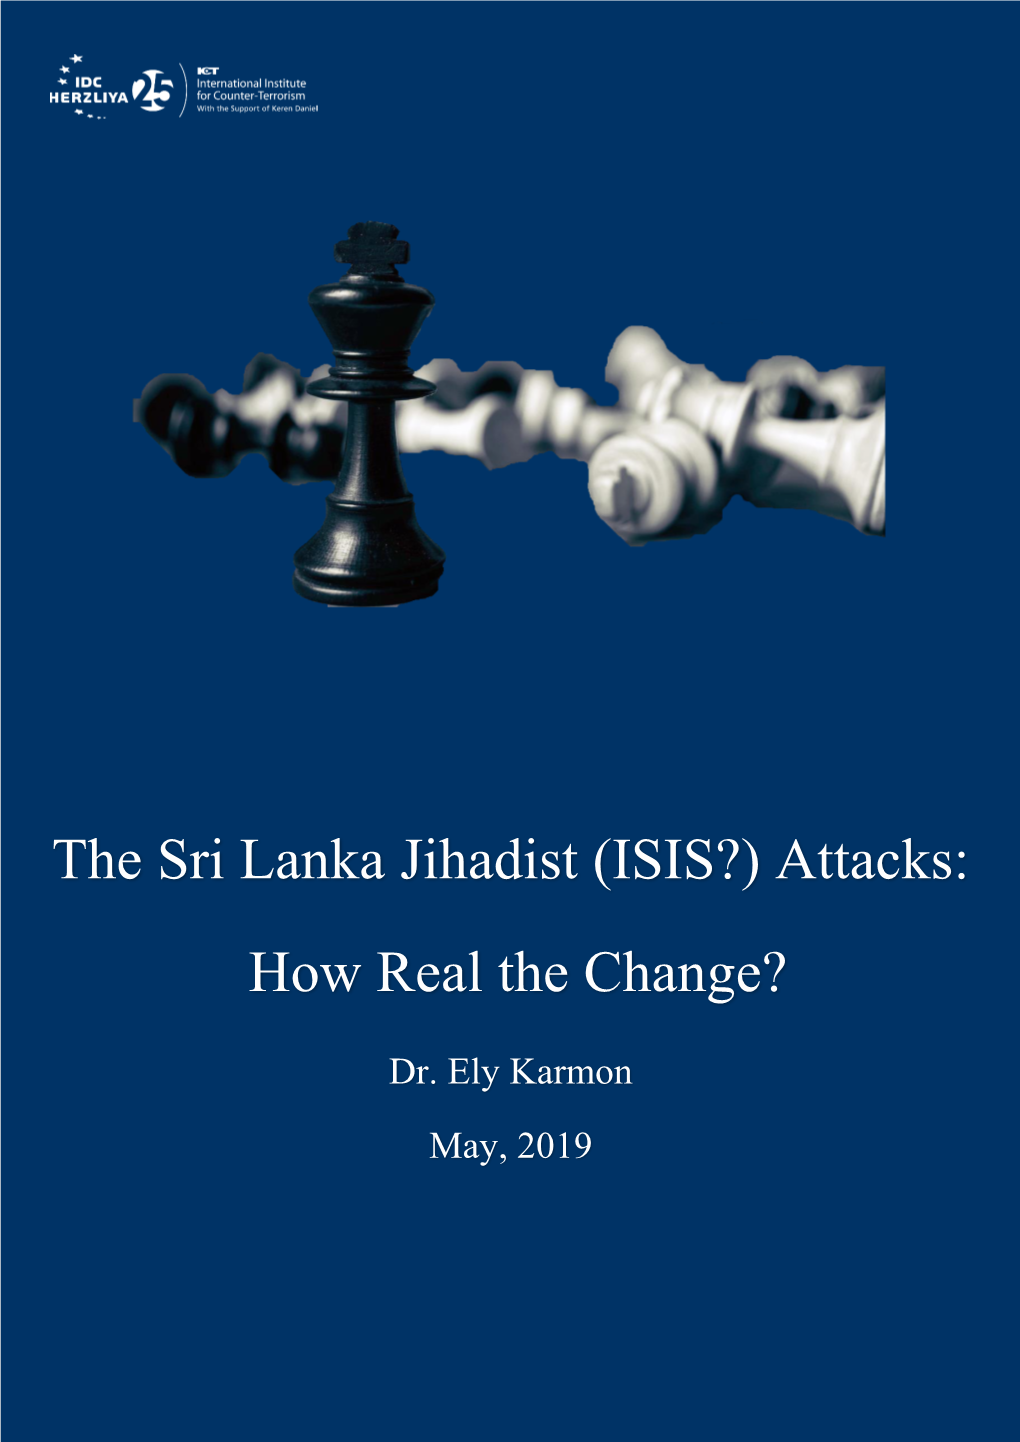 The Sri Lanka Jihadist (ISIS?) Attacks: How Real the Change?